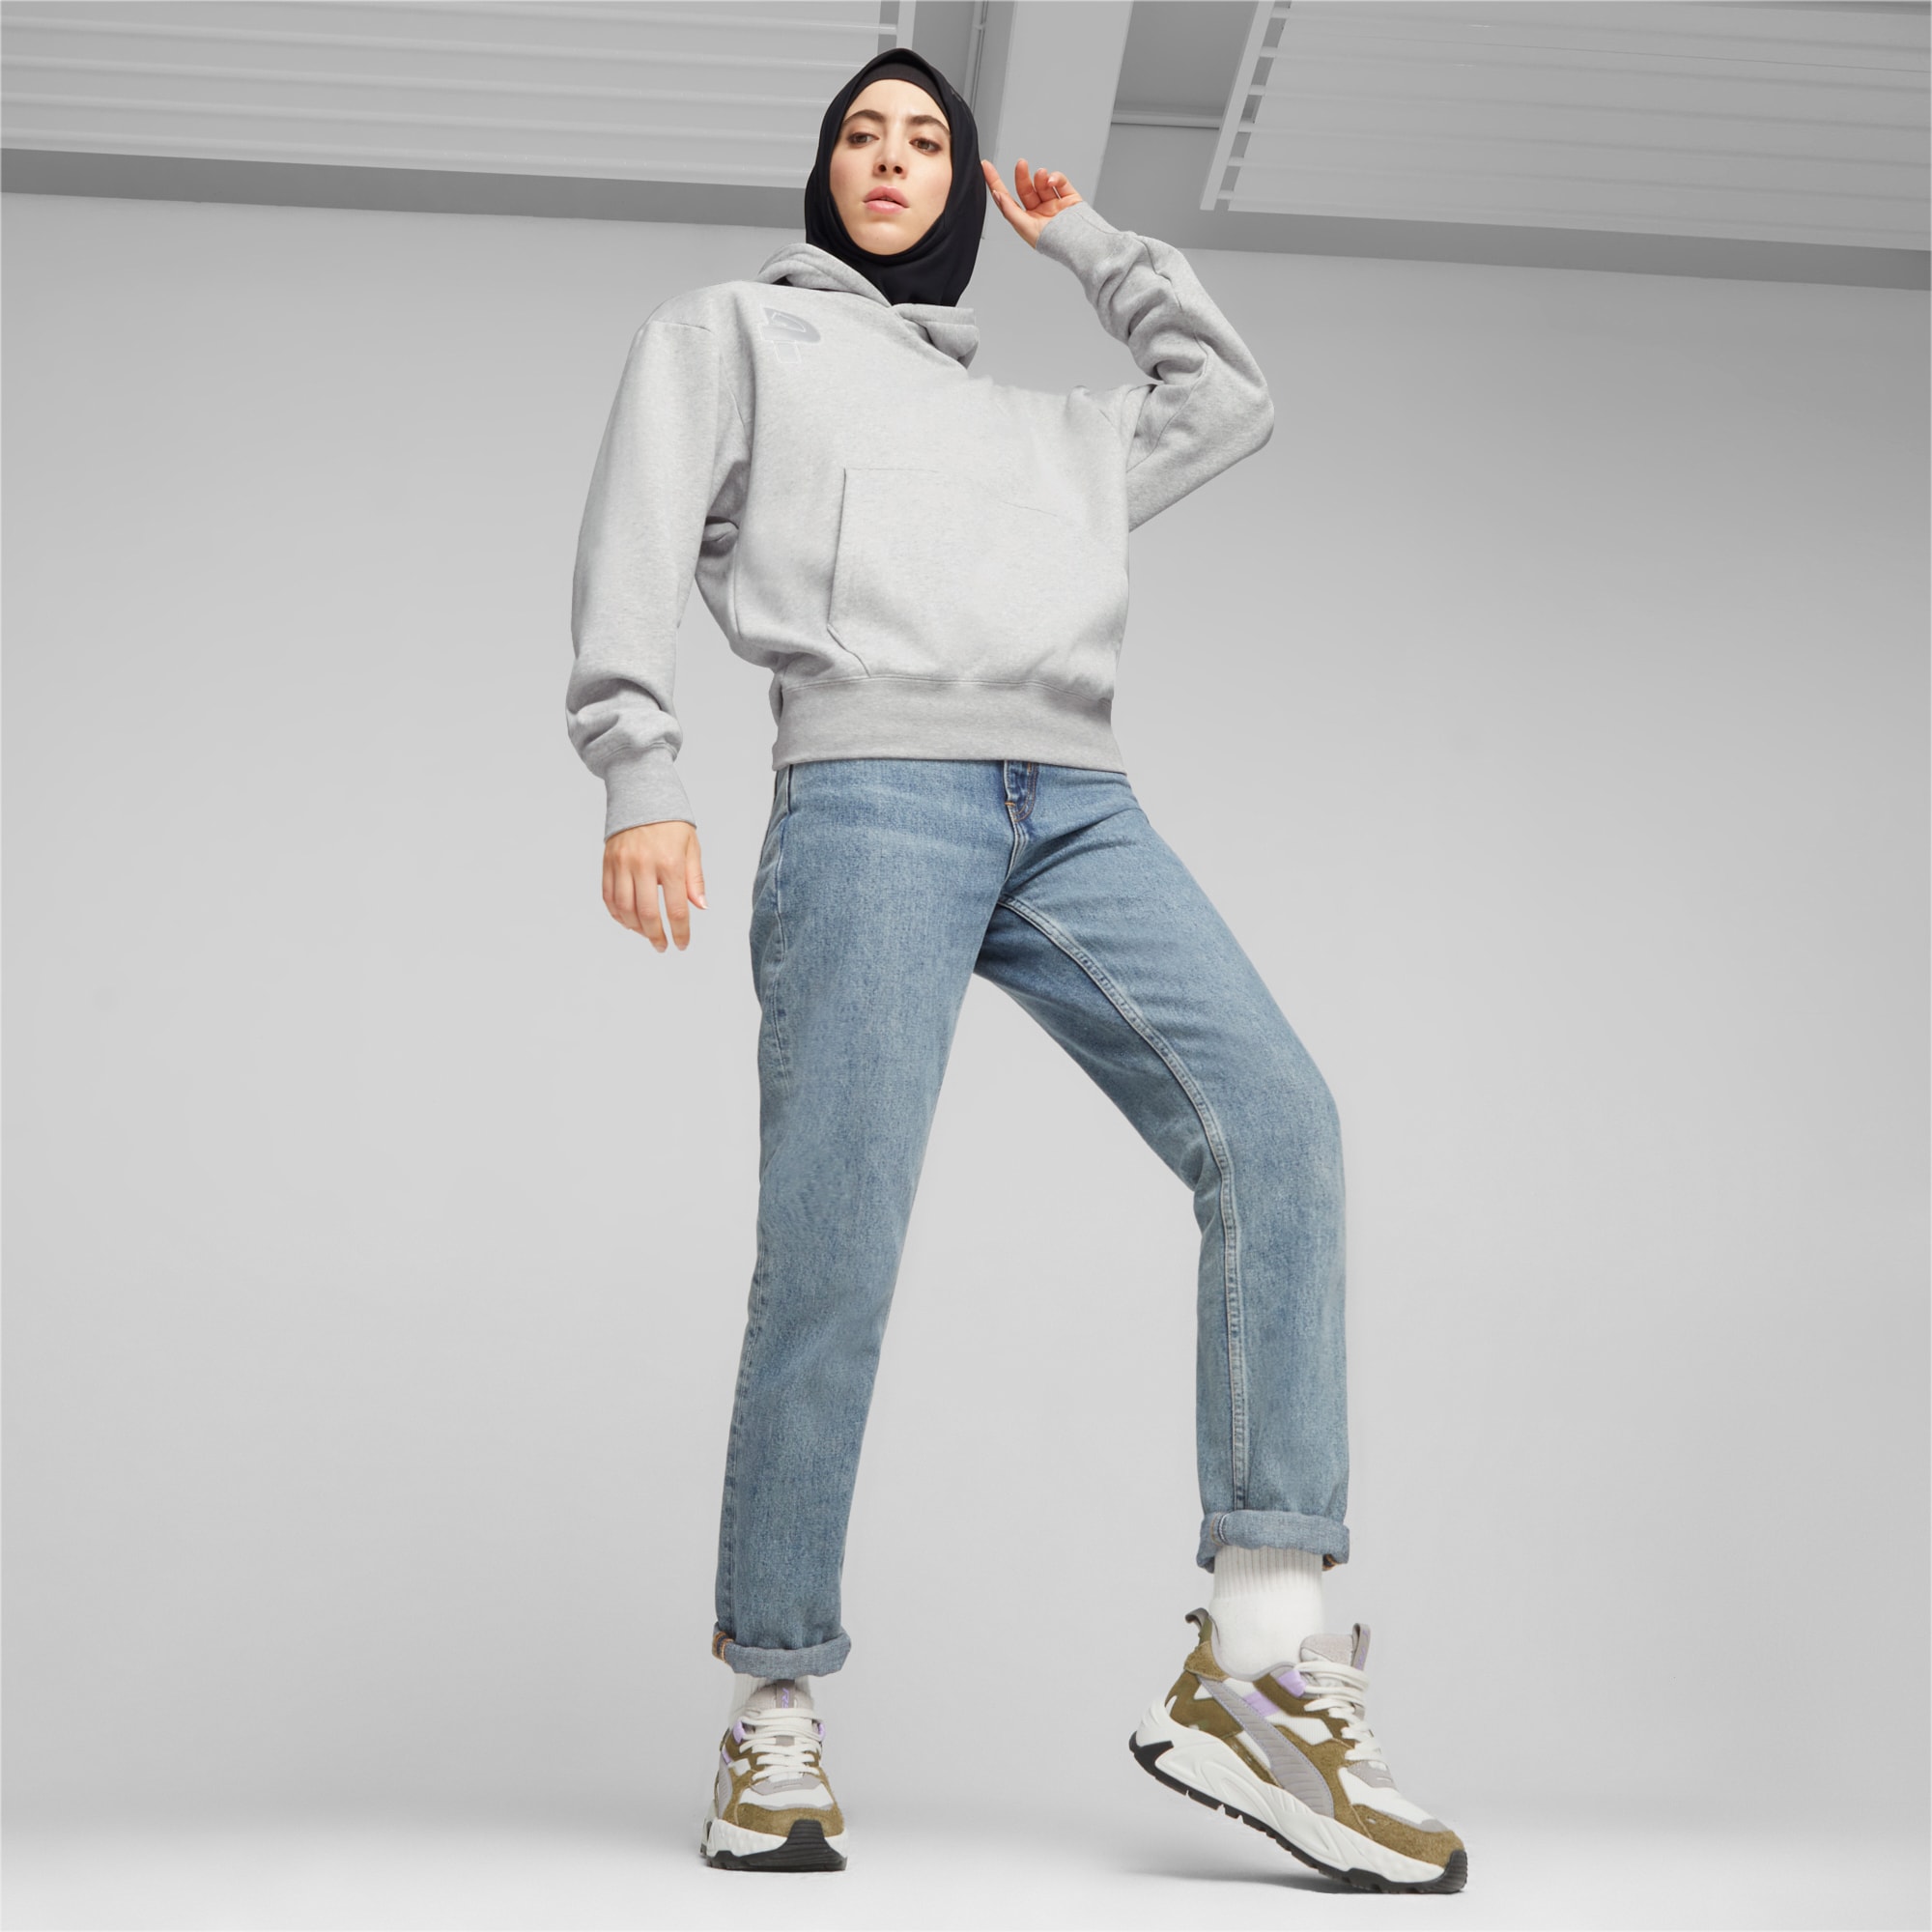 Women's PUMA Rs-Trck New Horizon Sneakers, Sedate Grey/Olive Drab